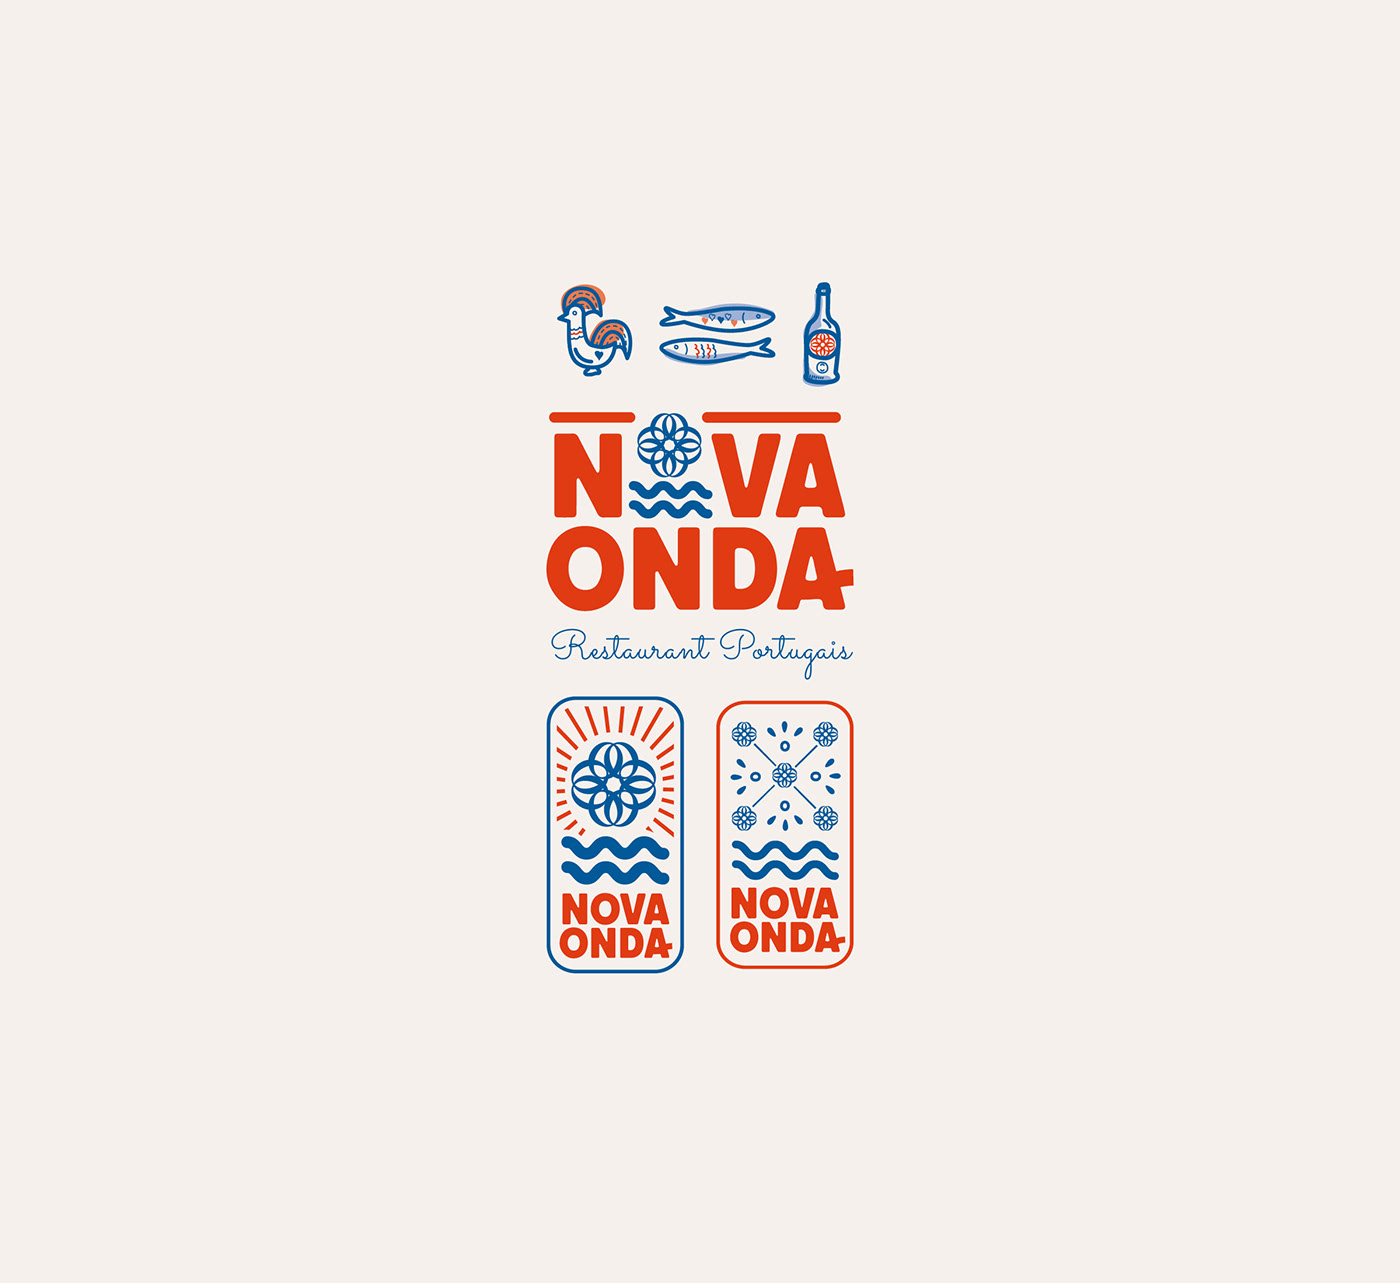 le logo Nova Onda accompagné de tous ses éléments graphiques